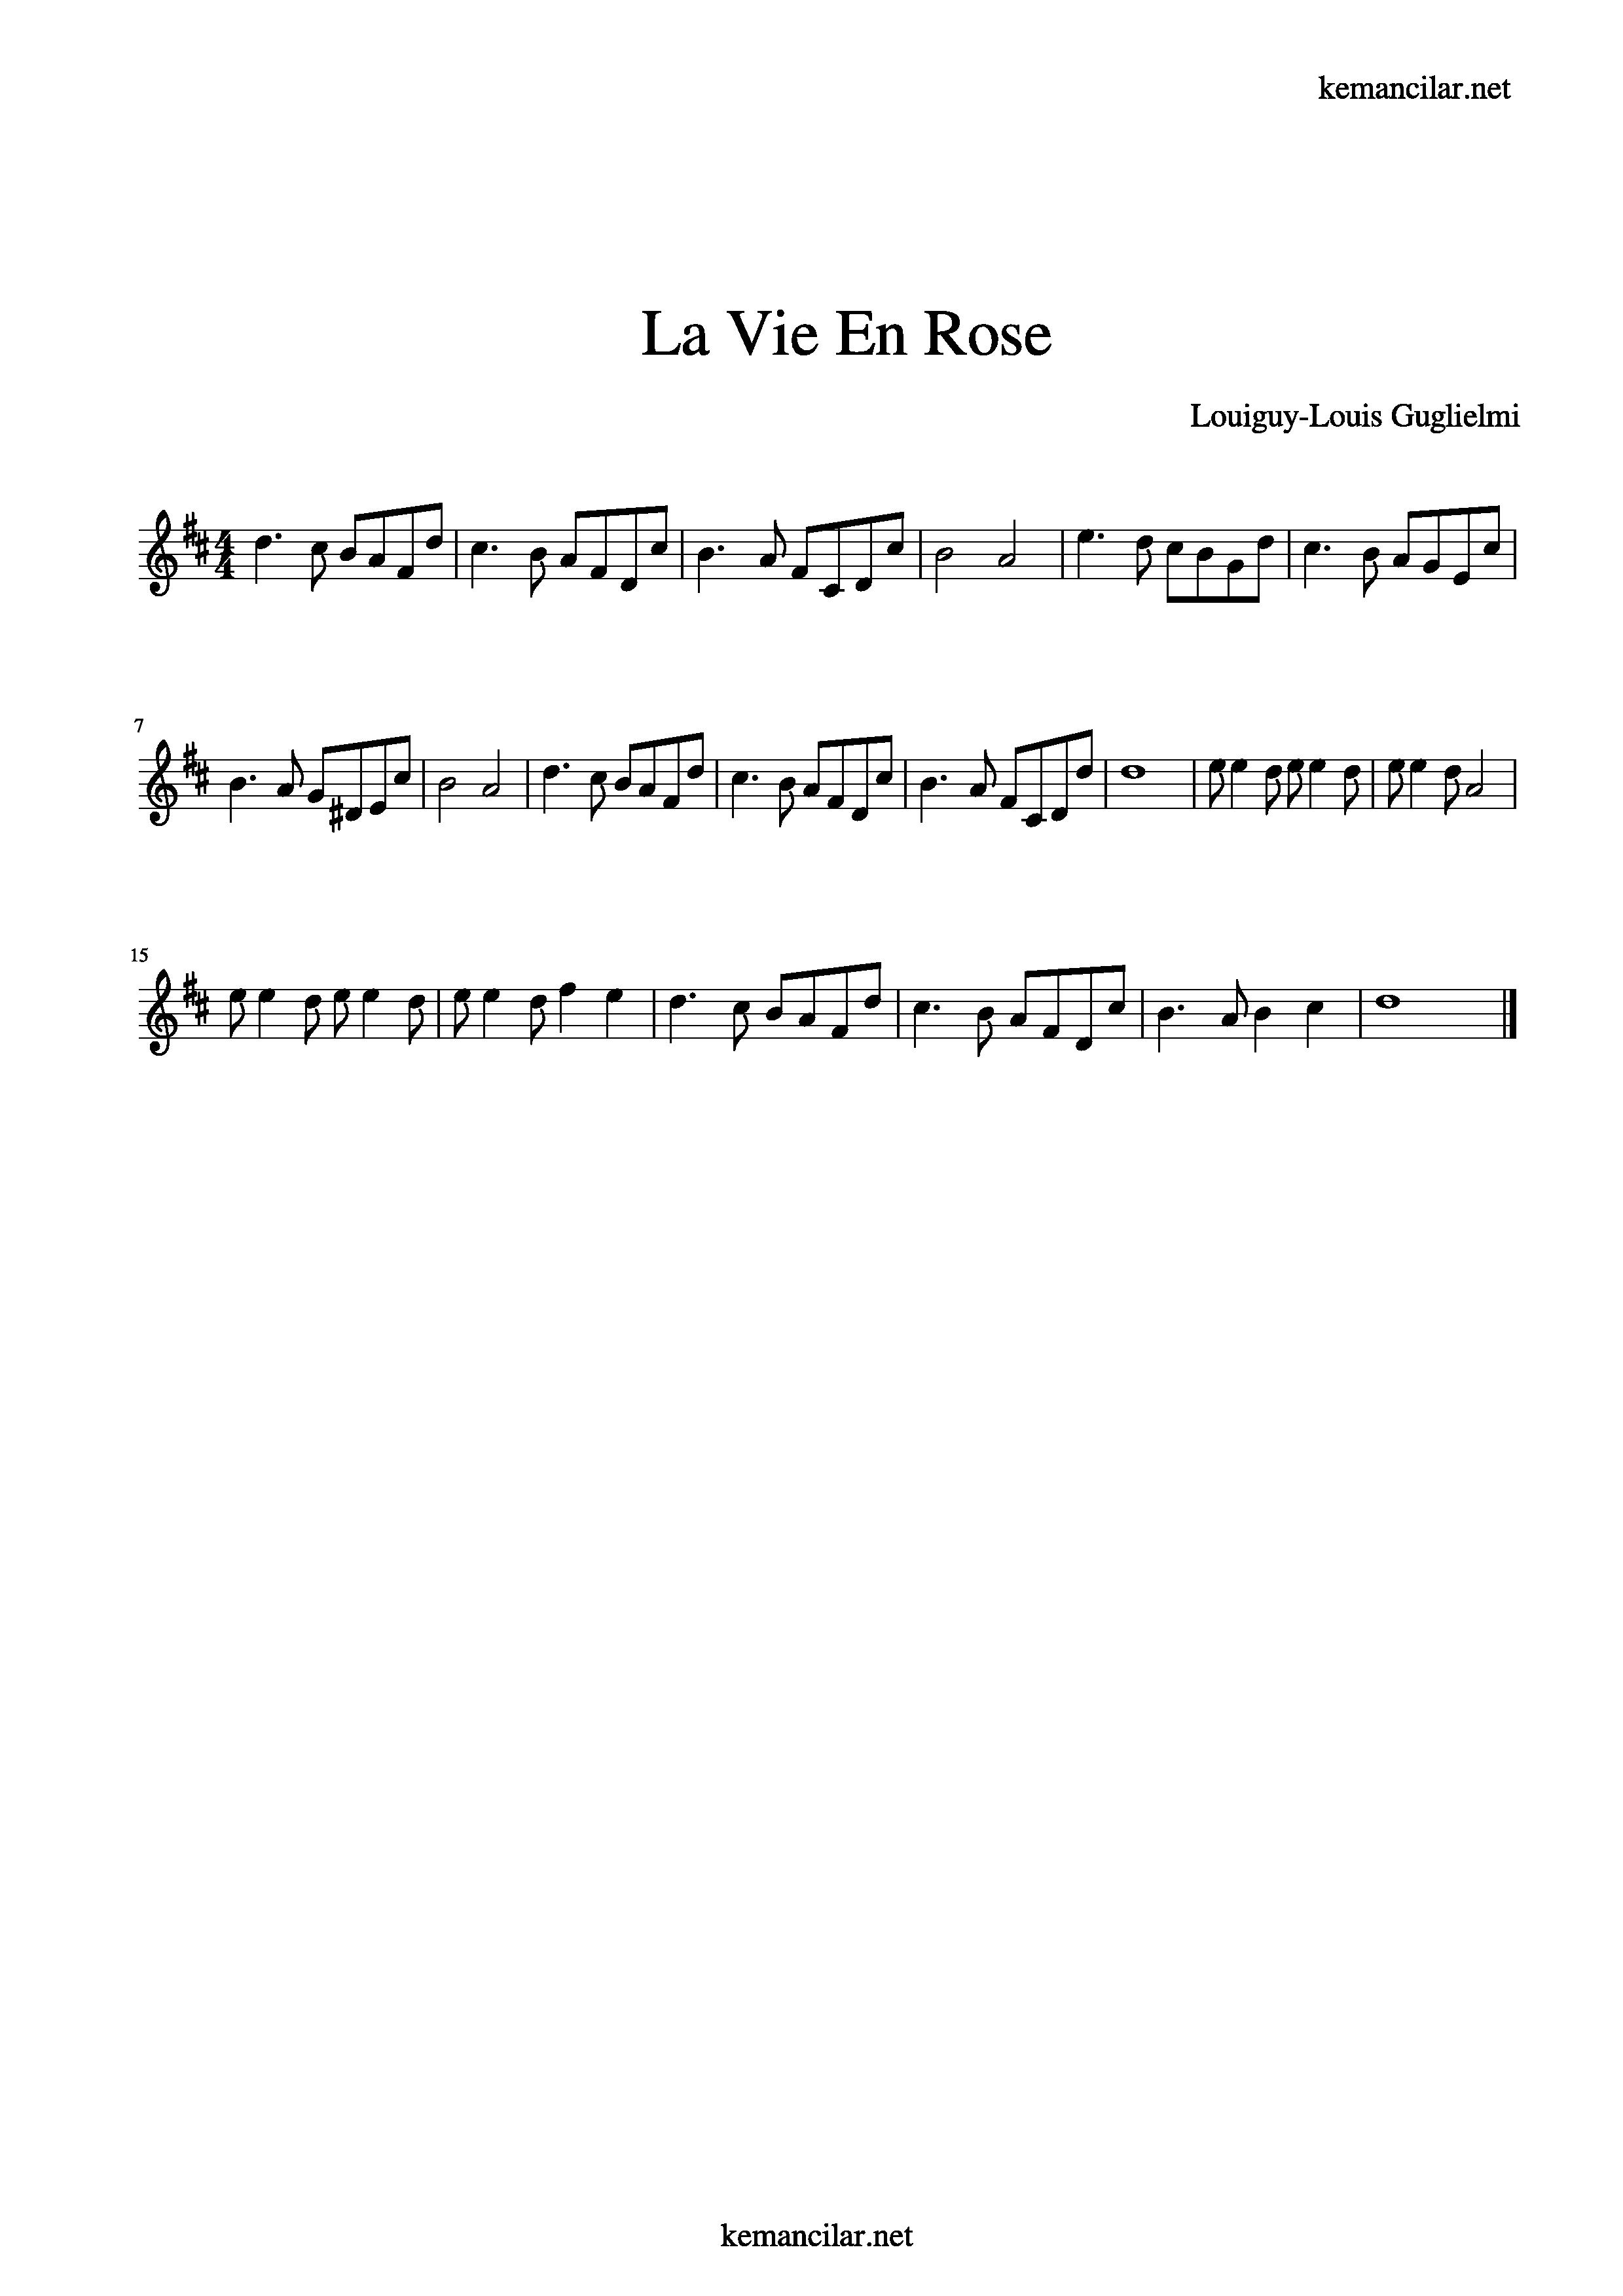 La Vie En Rose Violin Sheet Music Free Sheet Music